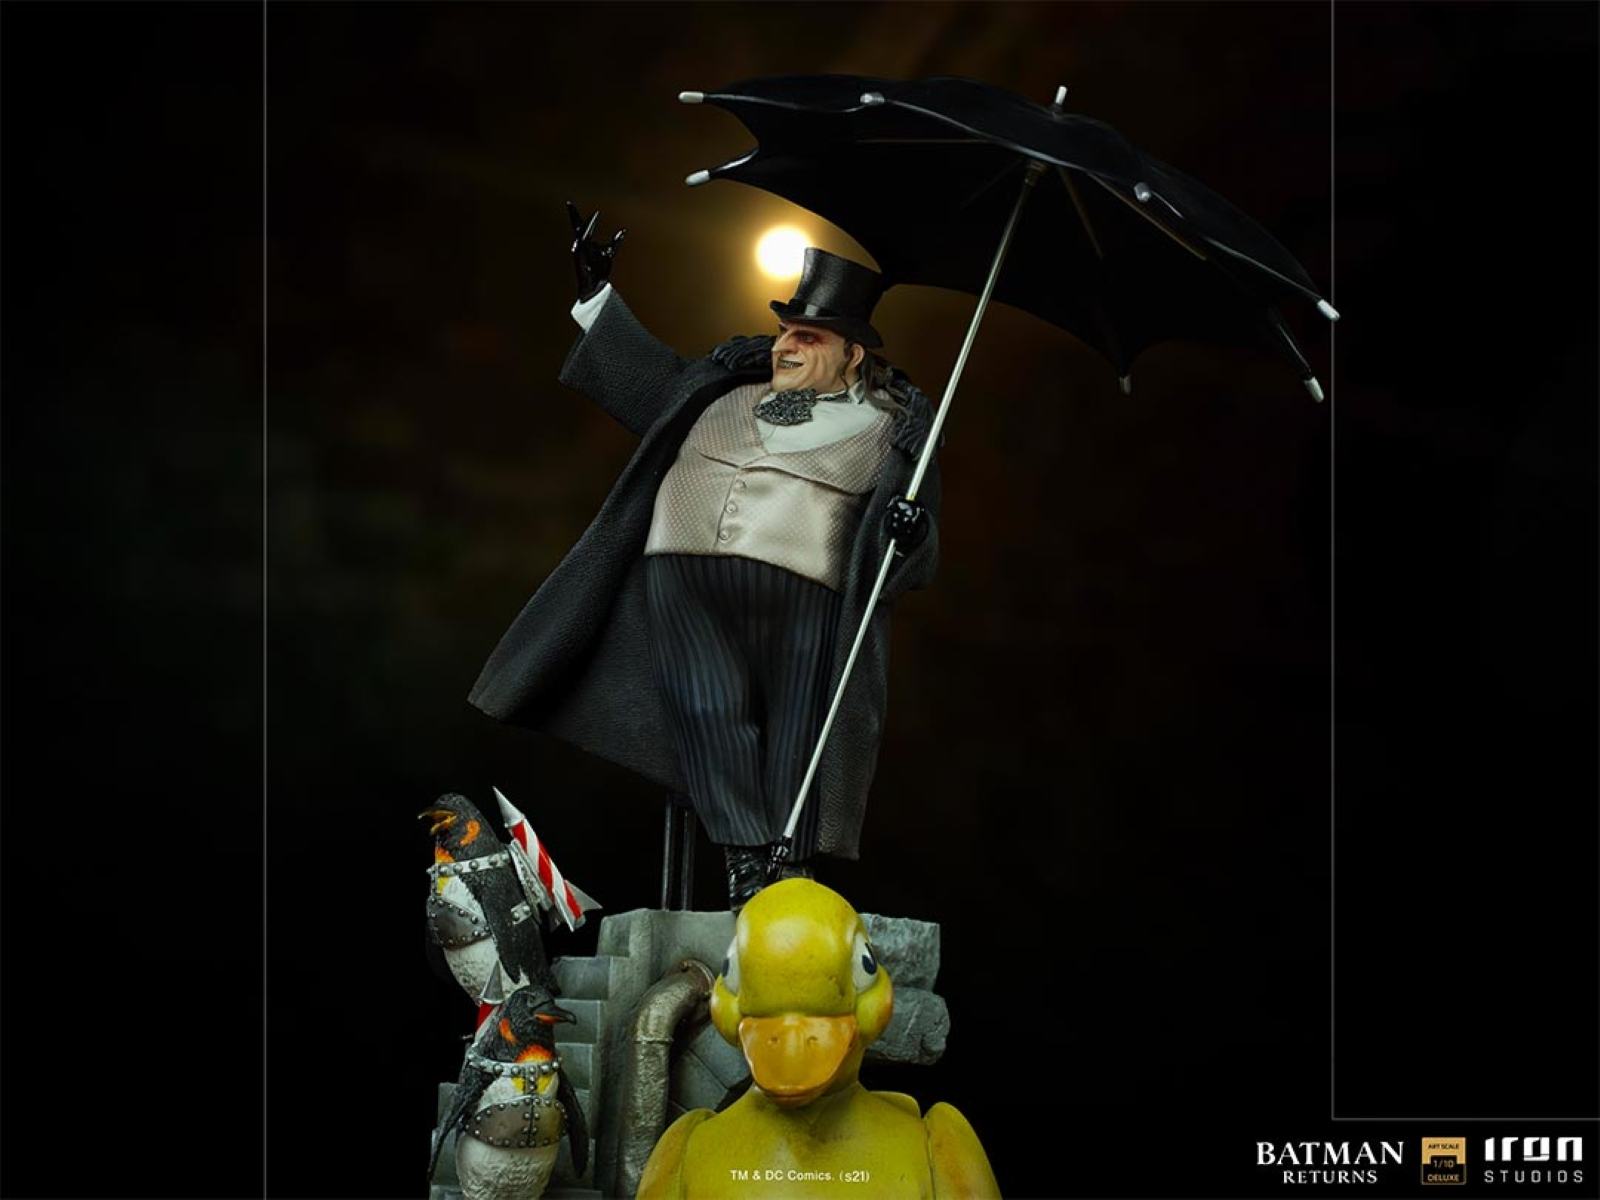 1/10 Batman IRON Statue STUDIOS Penguin Returns Deluxe - Sammelfigur